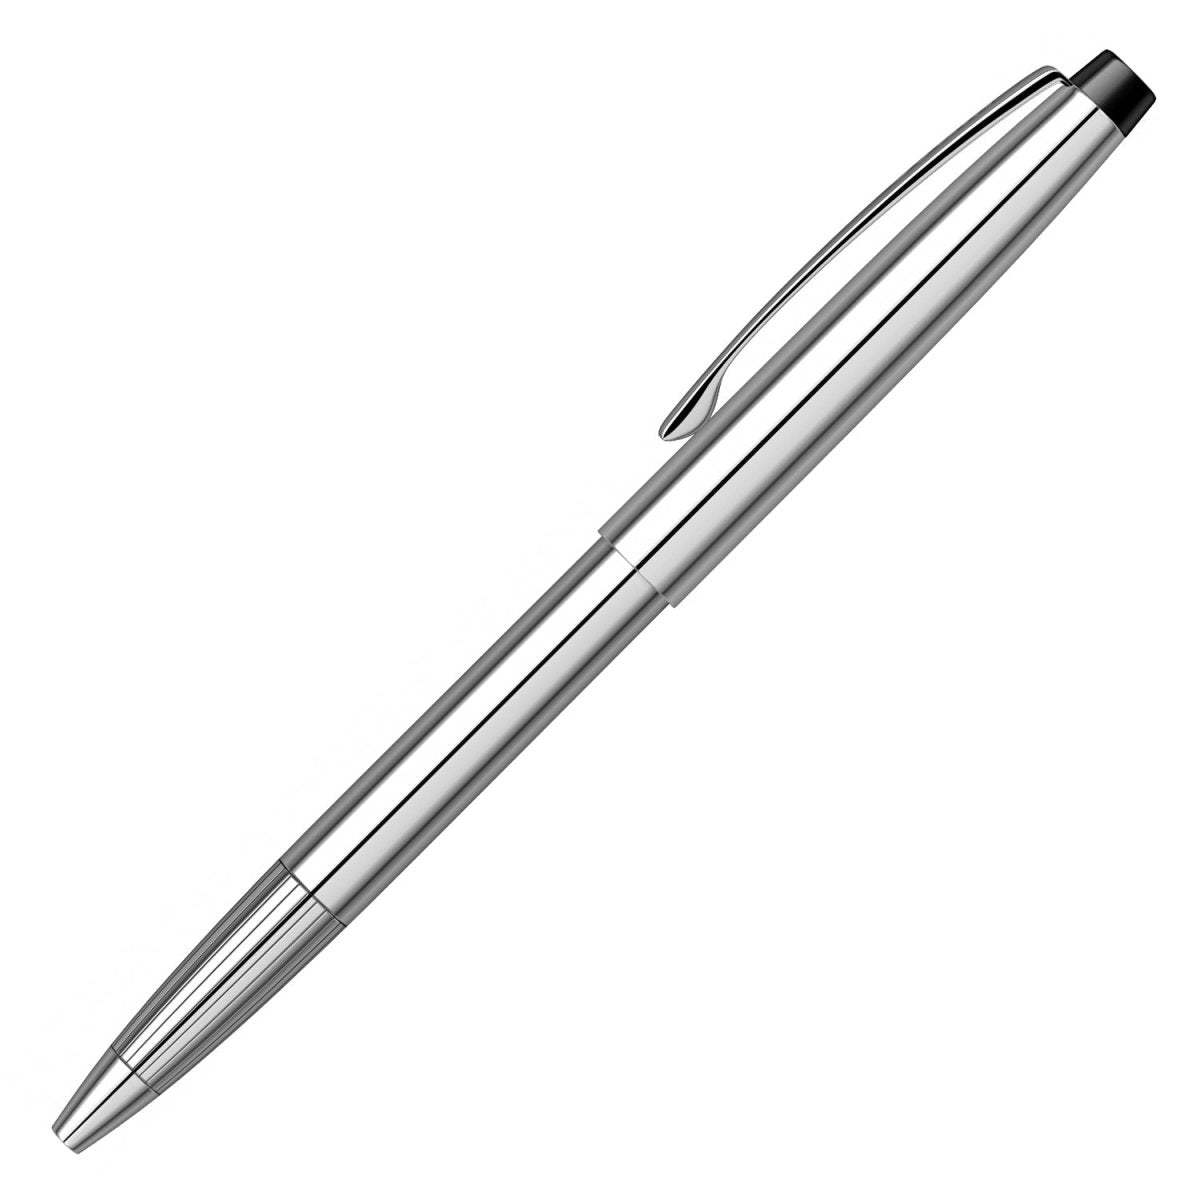 Scrikss F108 Ball Pens - SCOOBOO - 54021 - TGM - Ball Pen